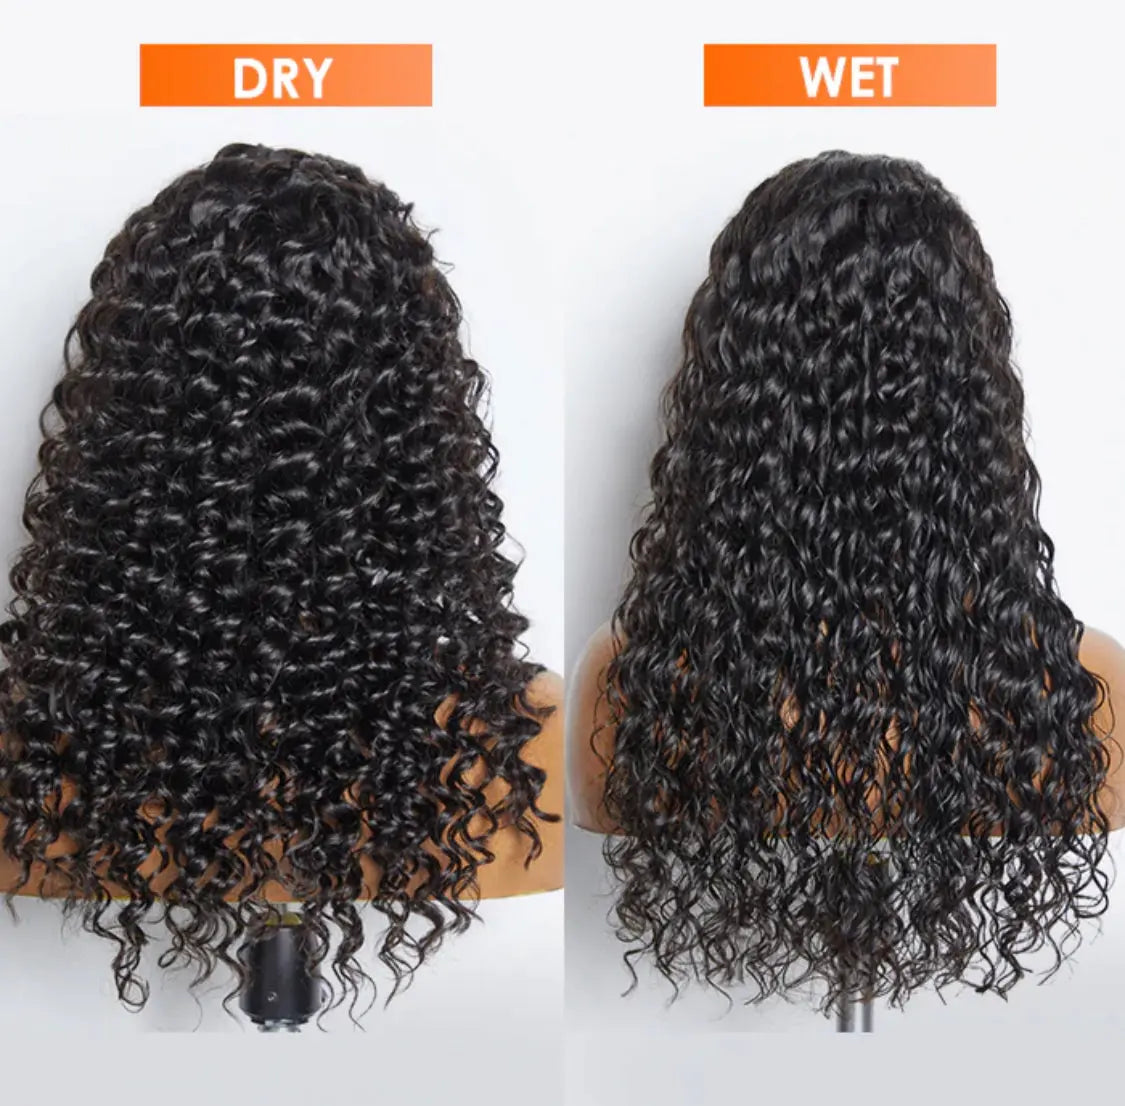 Glue-less 3-D cap pre-bleach deep wave 13 x 4 transparent lace front wig 150% density - Majestic Blendz